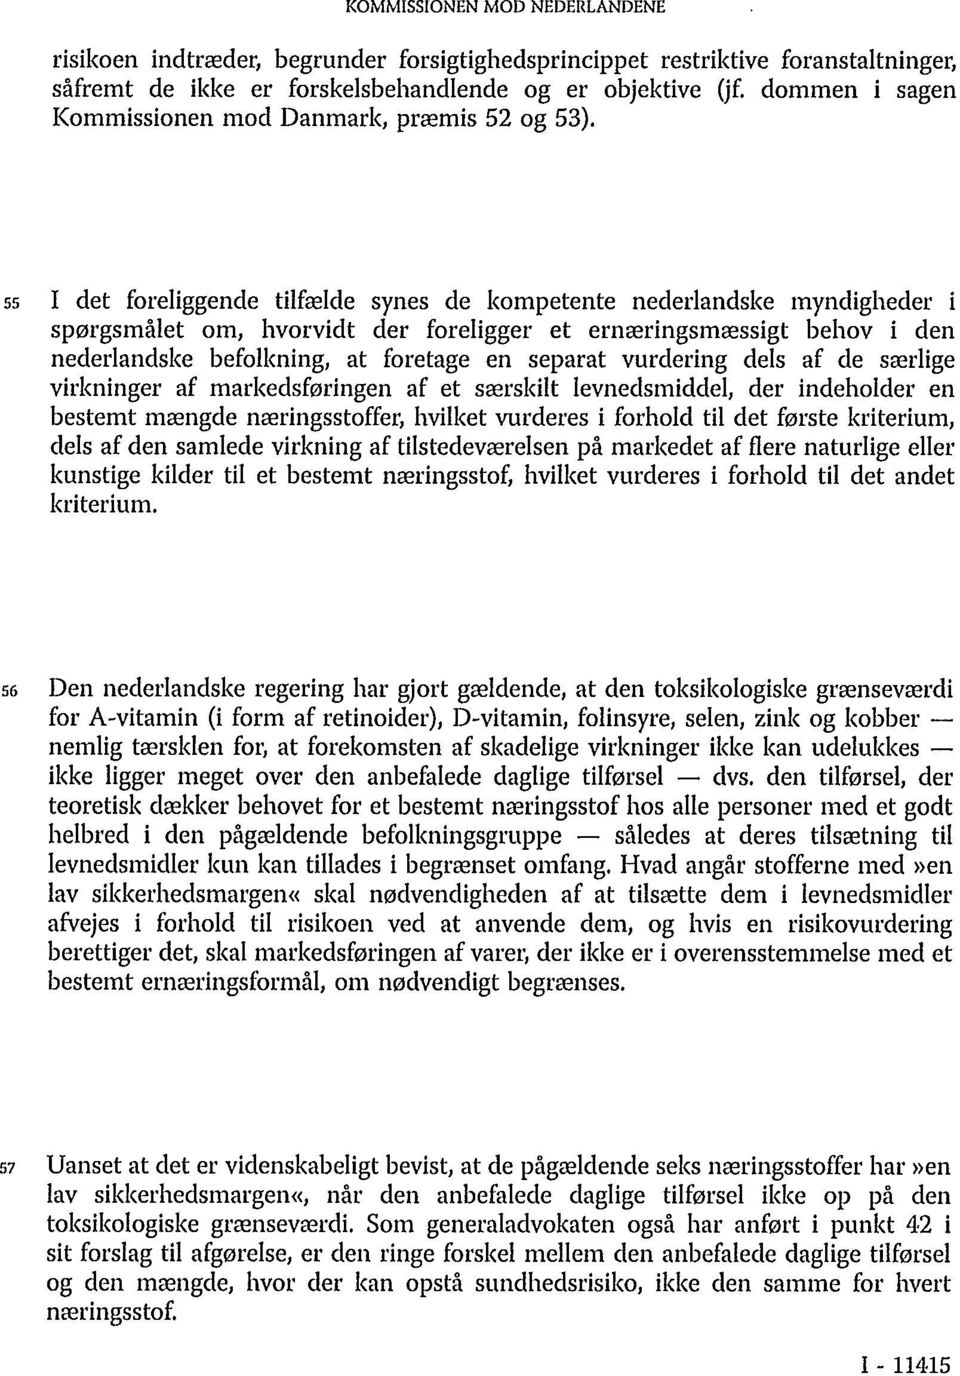 55 I det foreliggende tilfælde synes de kompetente nederlandske myndigheder i spørgsmålet om, hvorvidt der foreligger et ernæringsmæssigt behov i den nederlandske befolkning, at foretage en separat